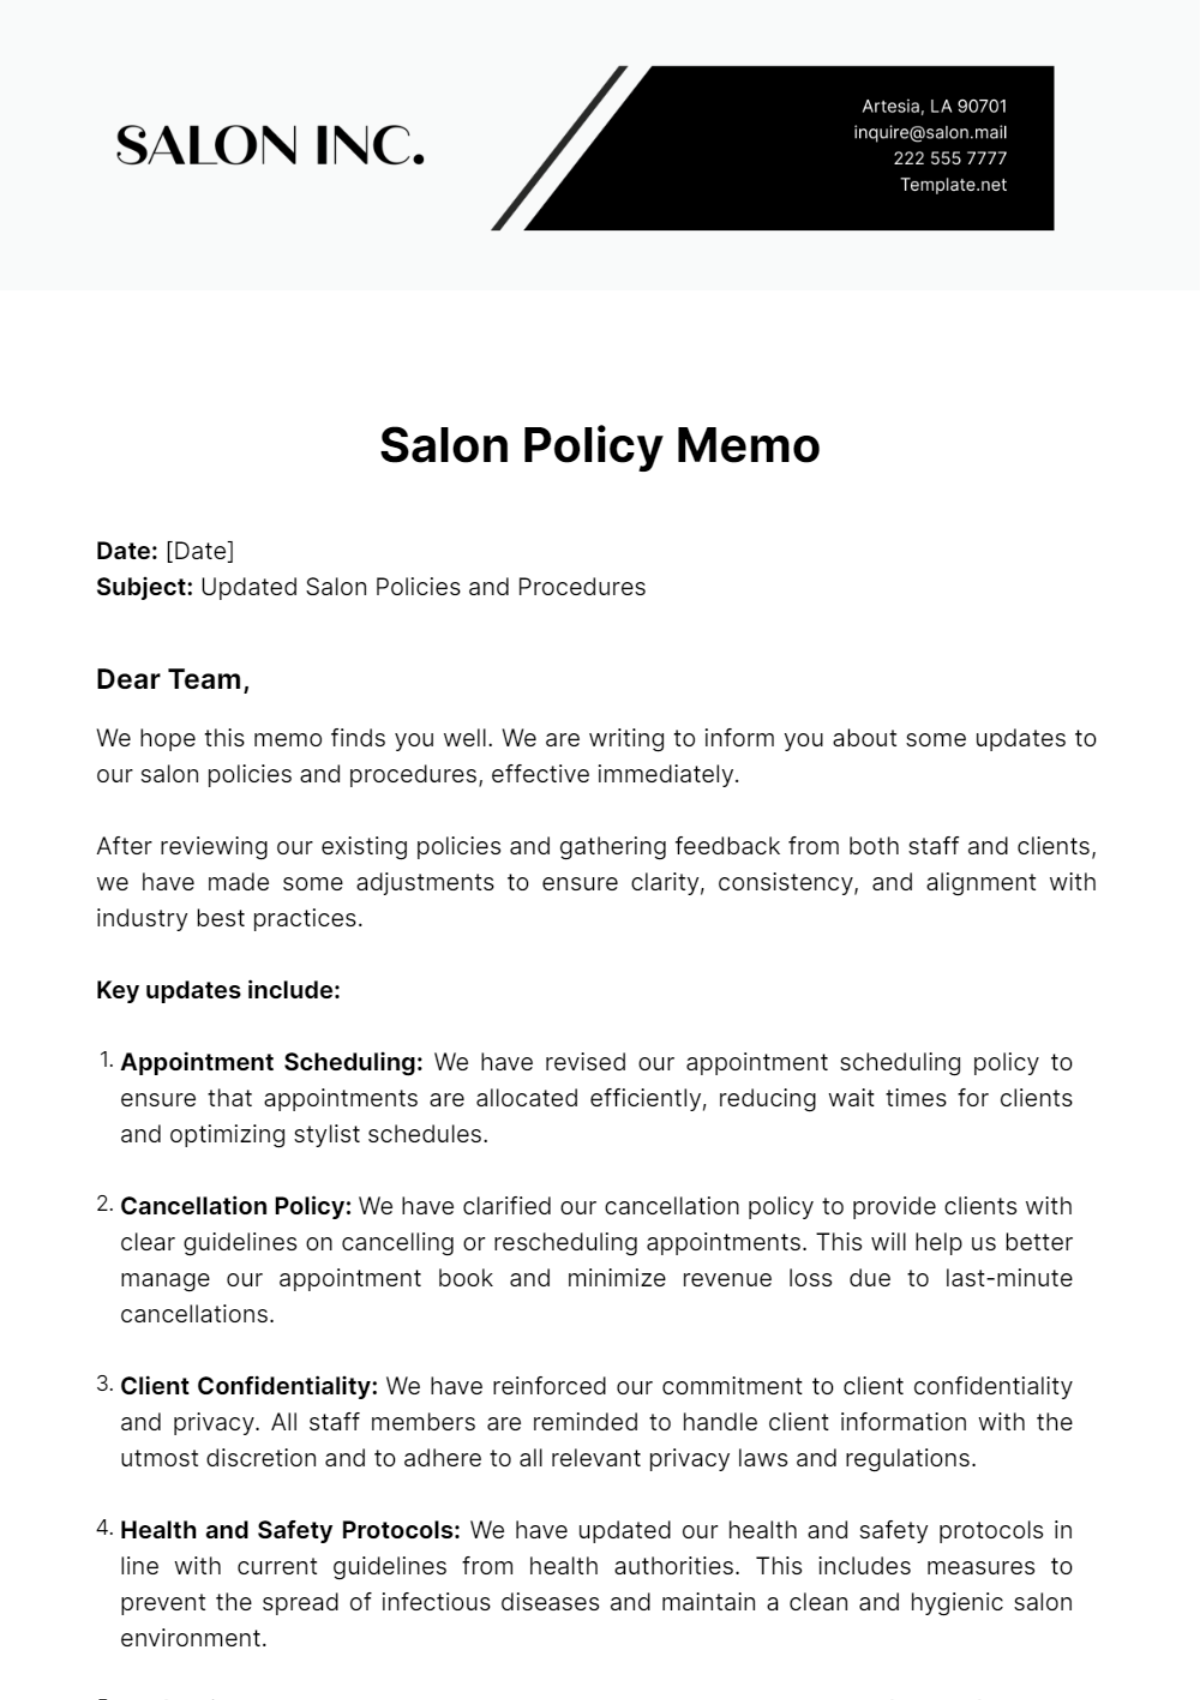 Salon Policy Memo Template